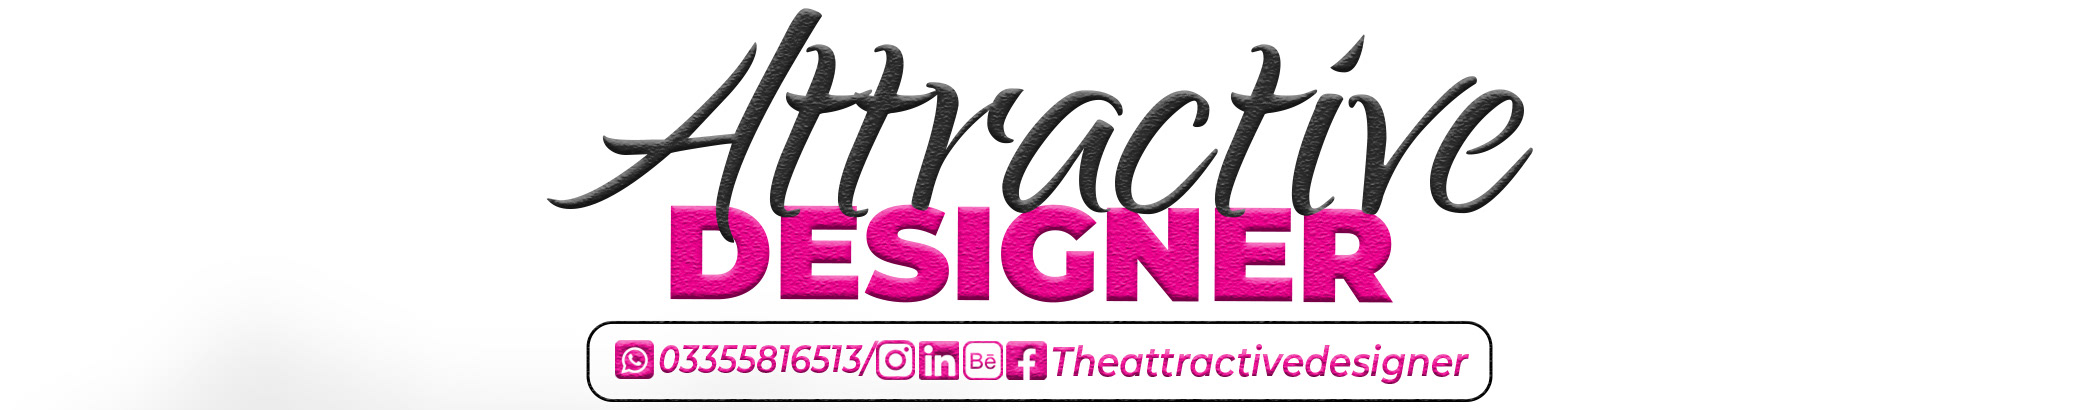 The Attractive Designer's profile banner